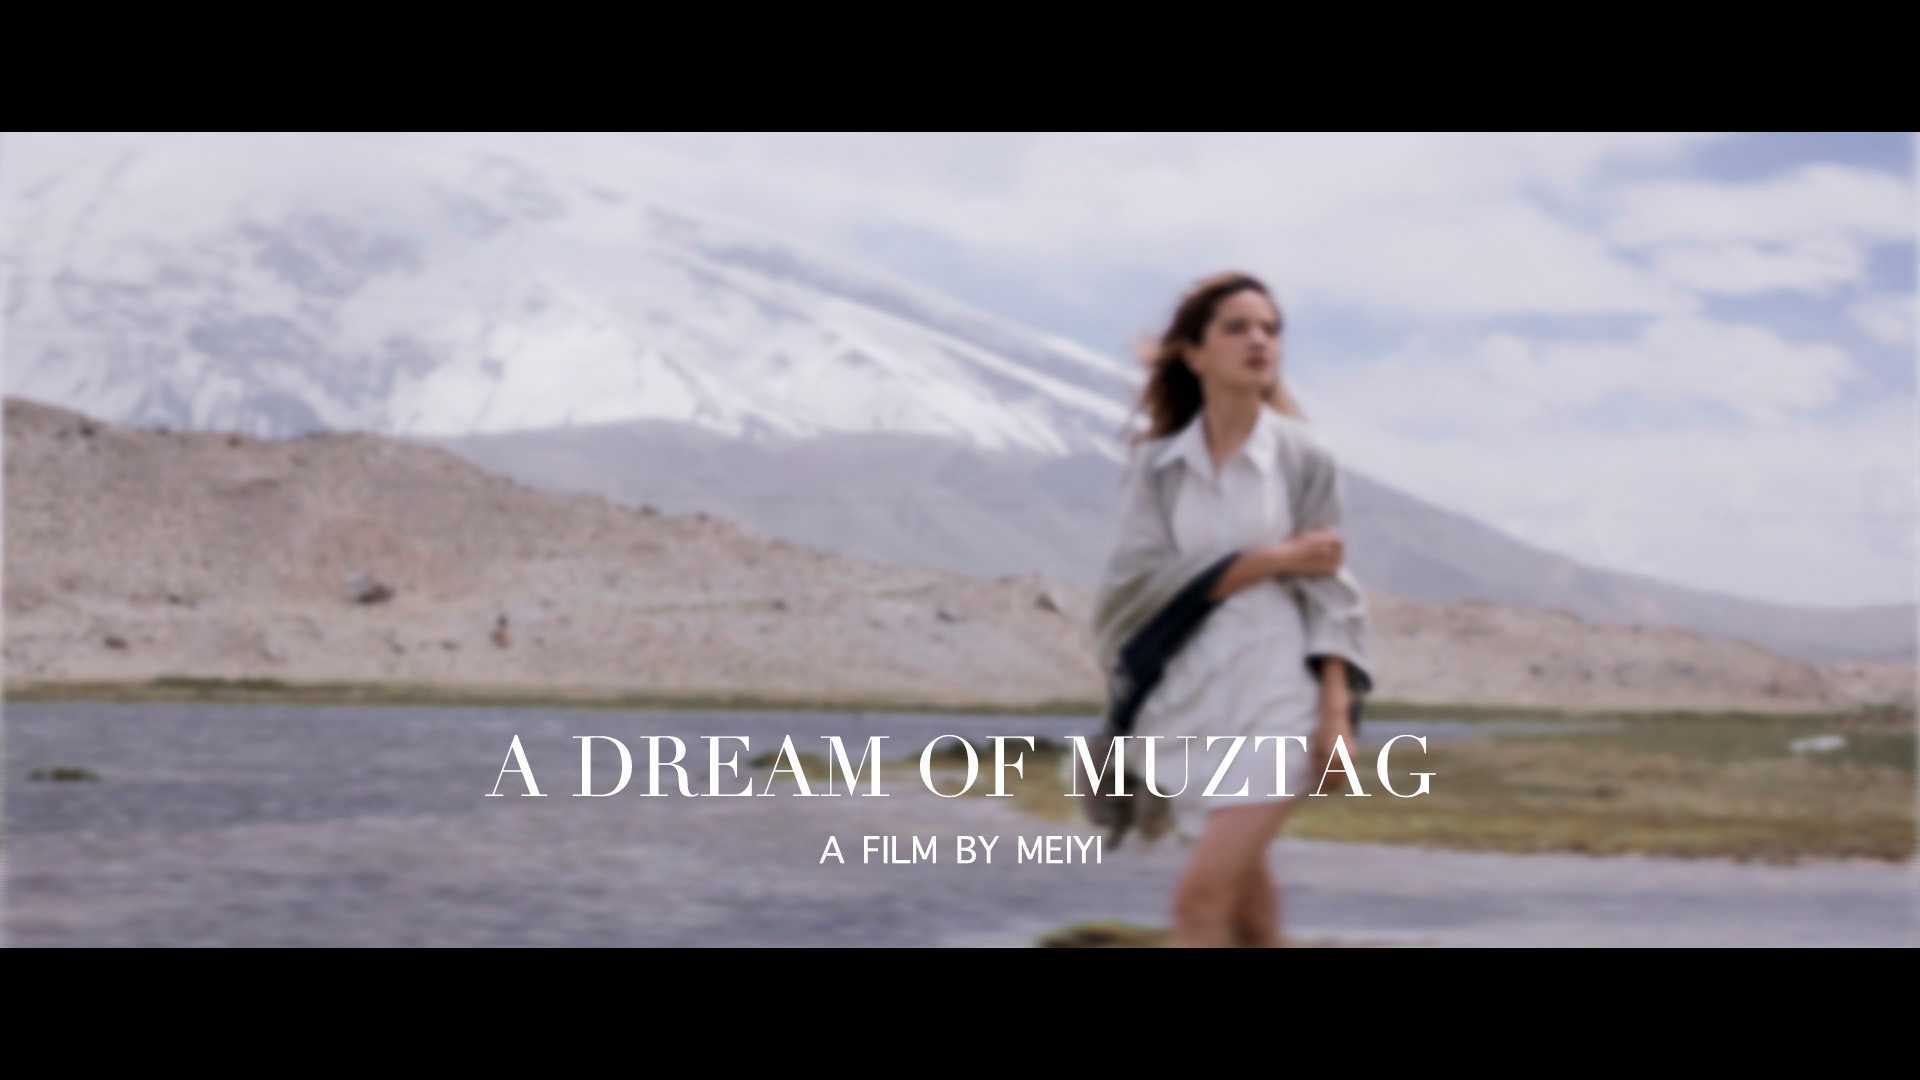 A DREAM OF MUZTAG